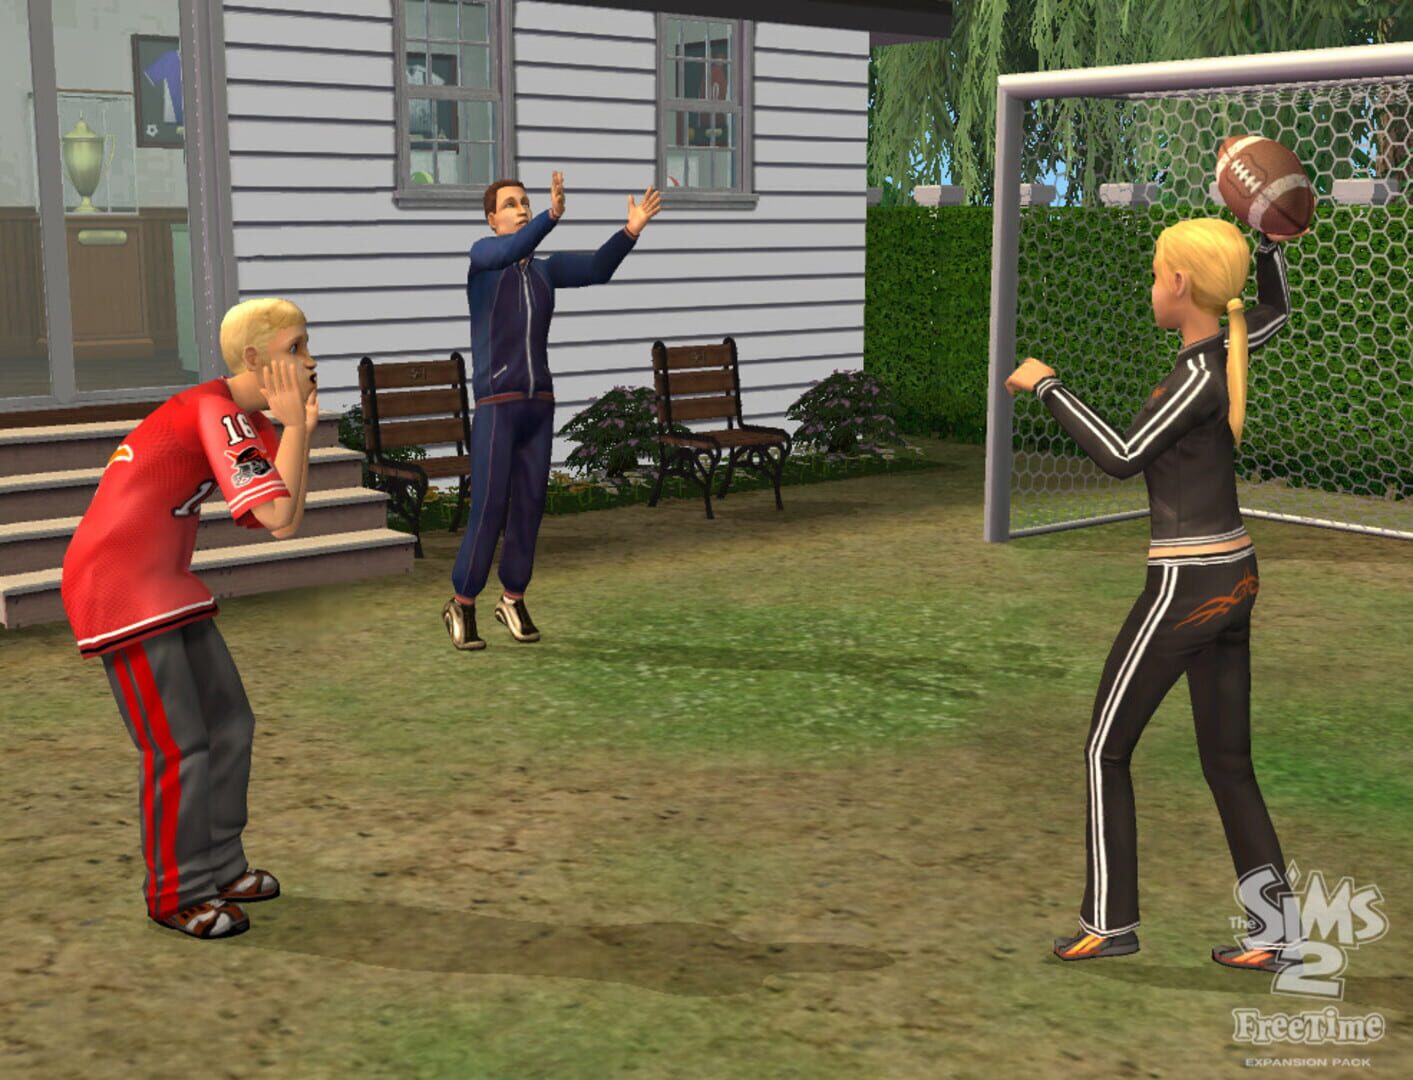 Captura de pantalla - The Sims 2: FreeTime